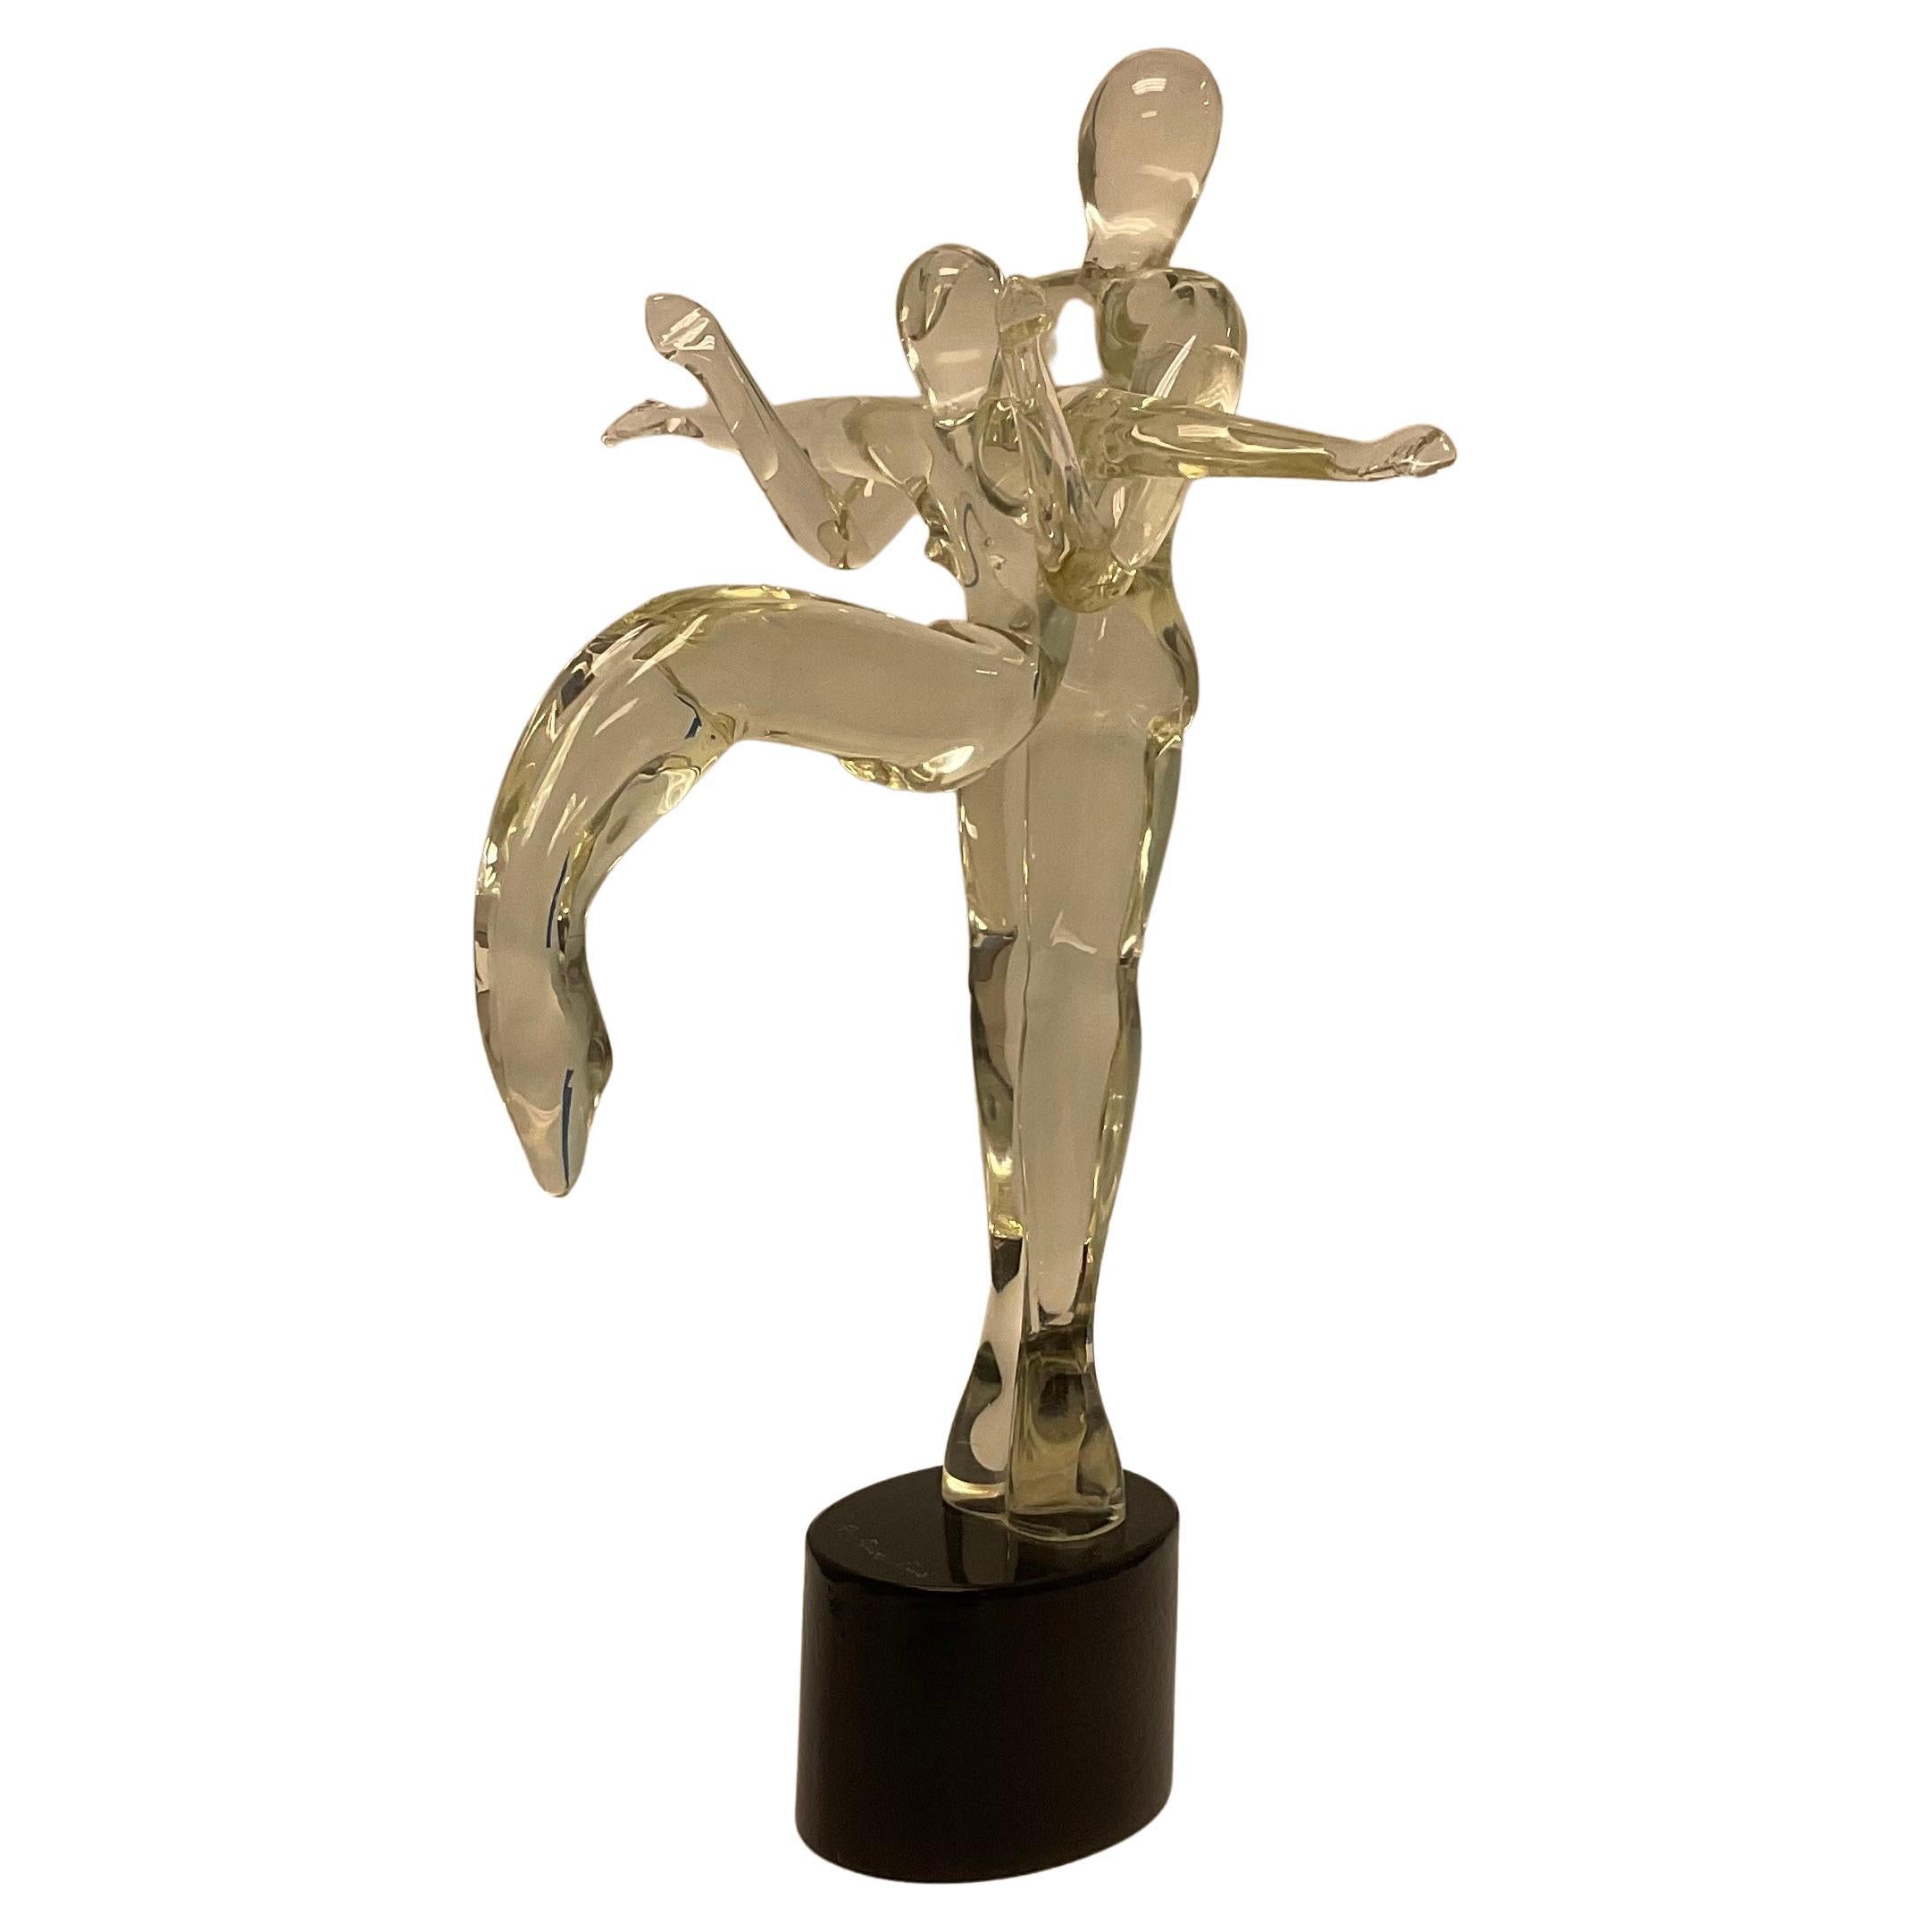 Renato Anatra Gymnast-Tänzer-Skulptur aus Murano-Kunstglas, signiert vom Künstler 